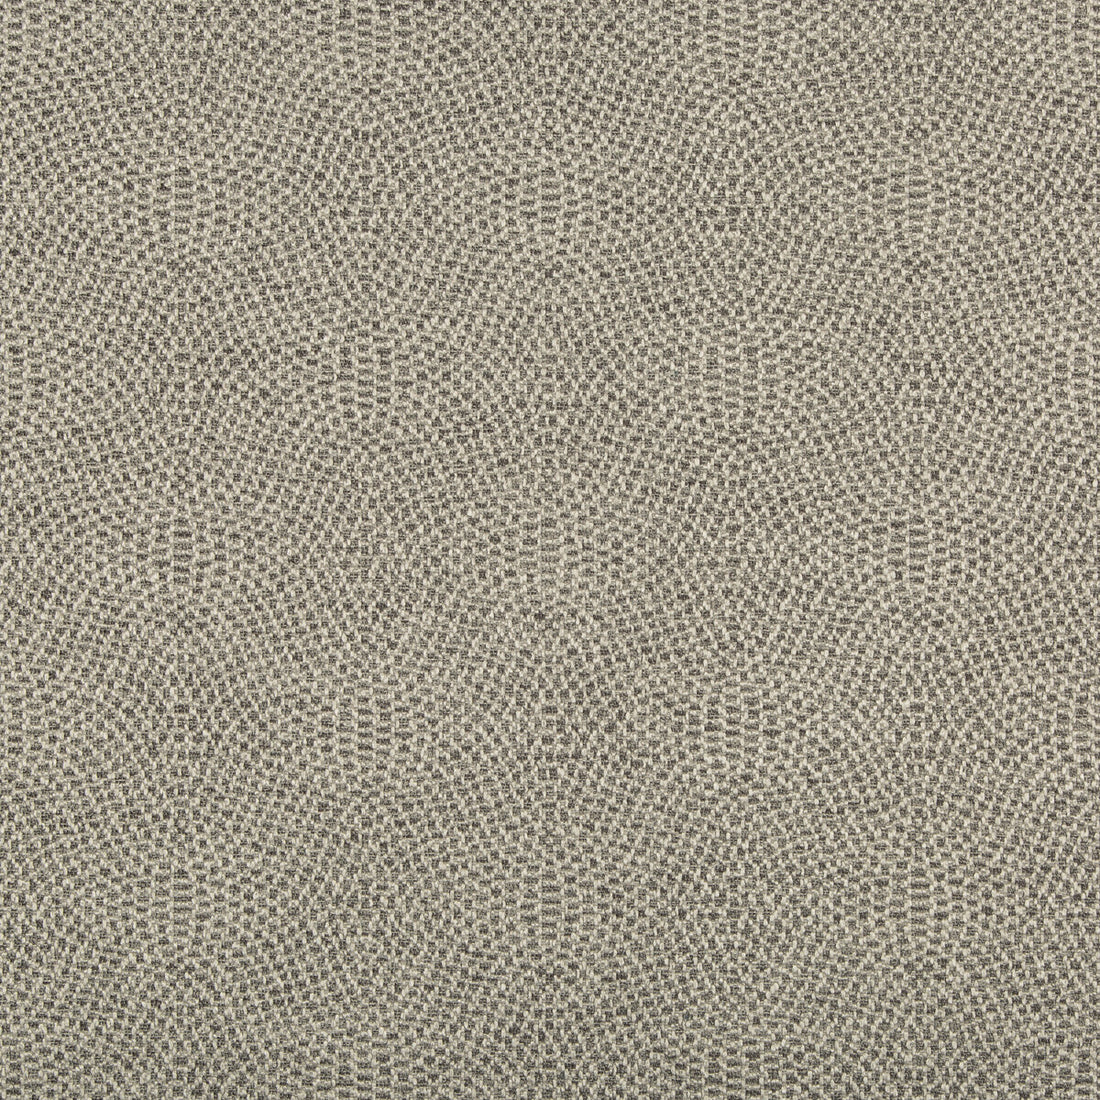 Kravet Design fabric in 35699-11 color - pattern 35699.11.0 - by Kravet Design